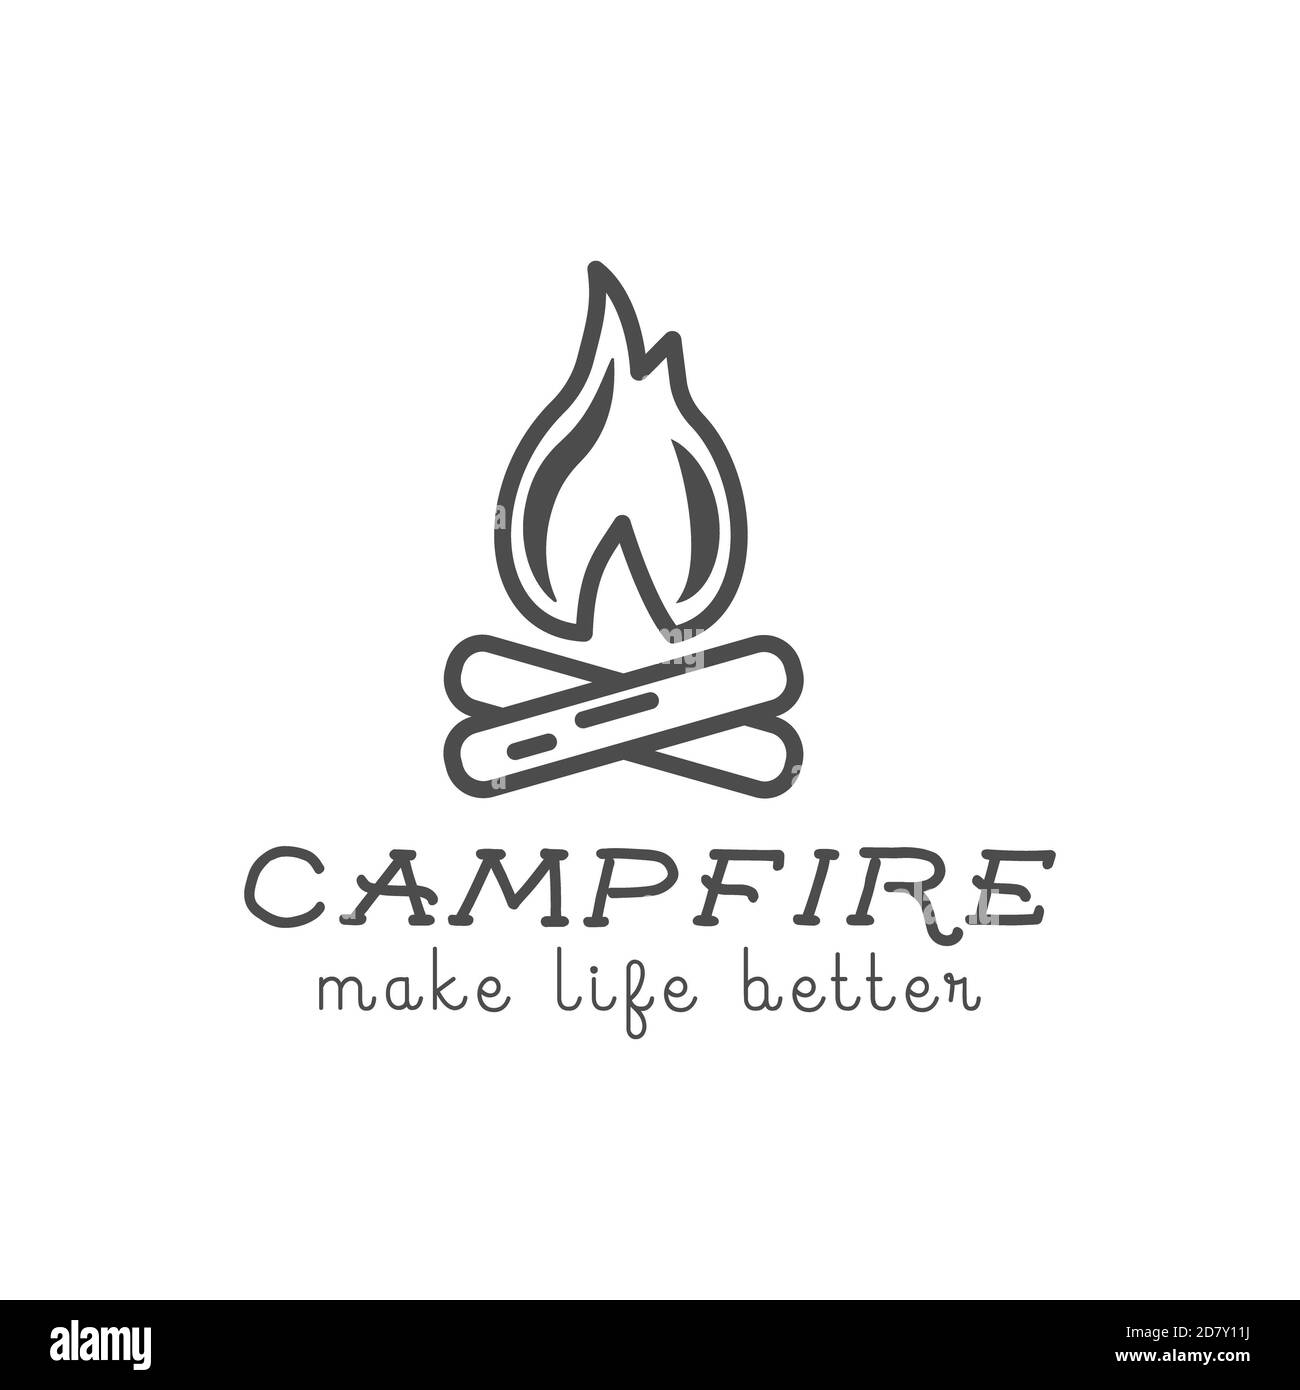 Il design del logo del campeggio con elementi tipografici e di viaggio - campfire. Testo - rendere la vita migliore. Sentiero escursionistico, backpacking simboli in colori retrò piatto Foto Stock